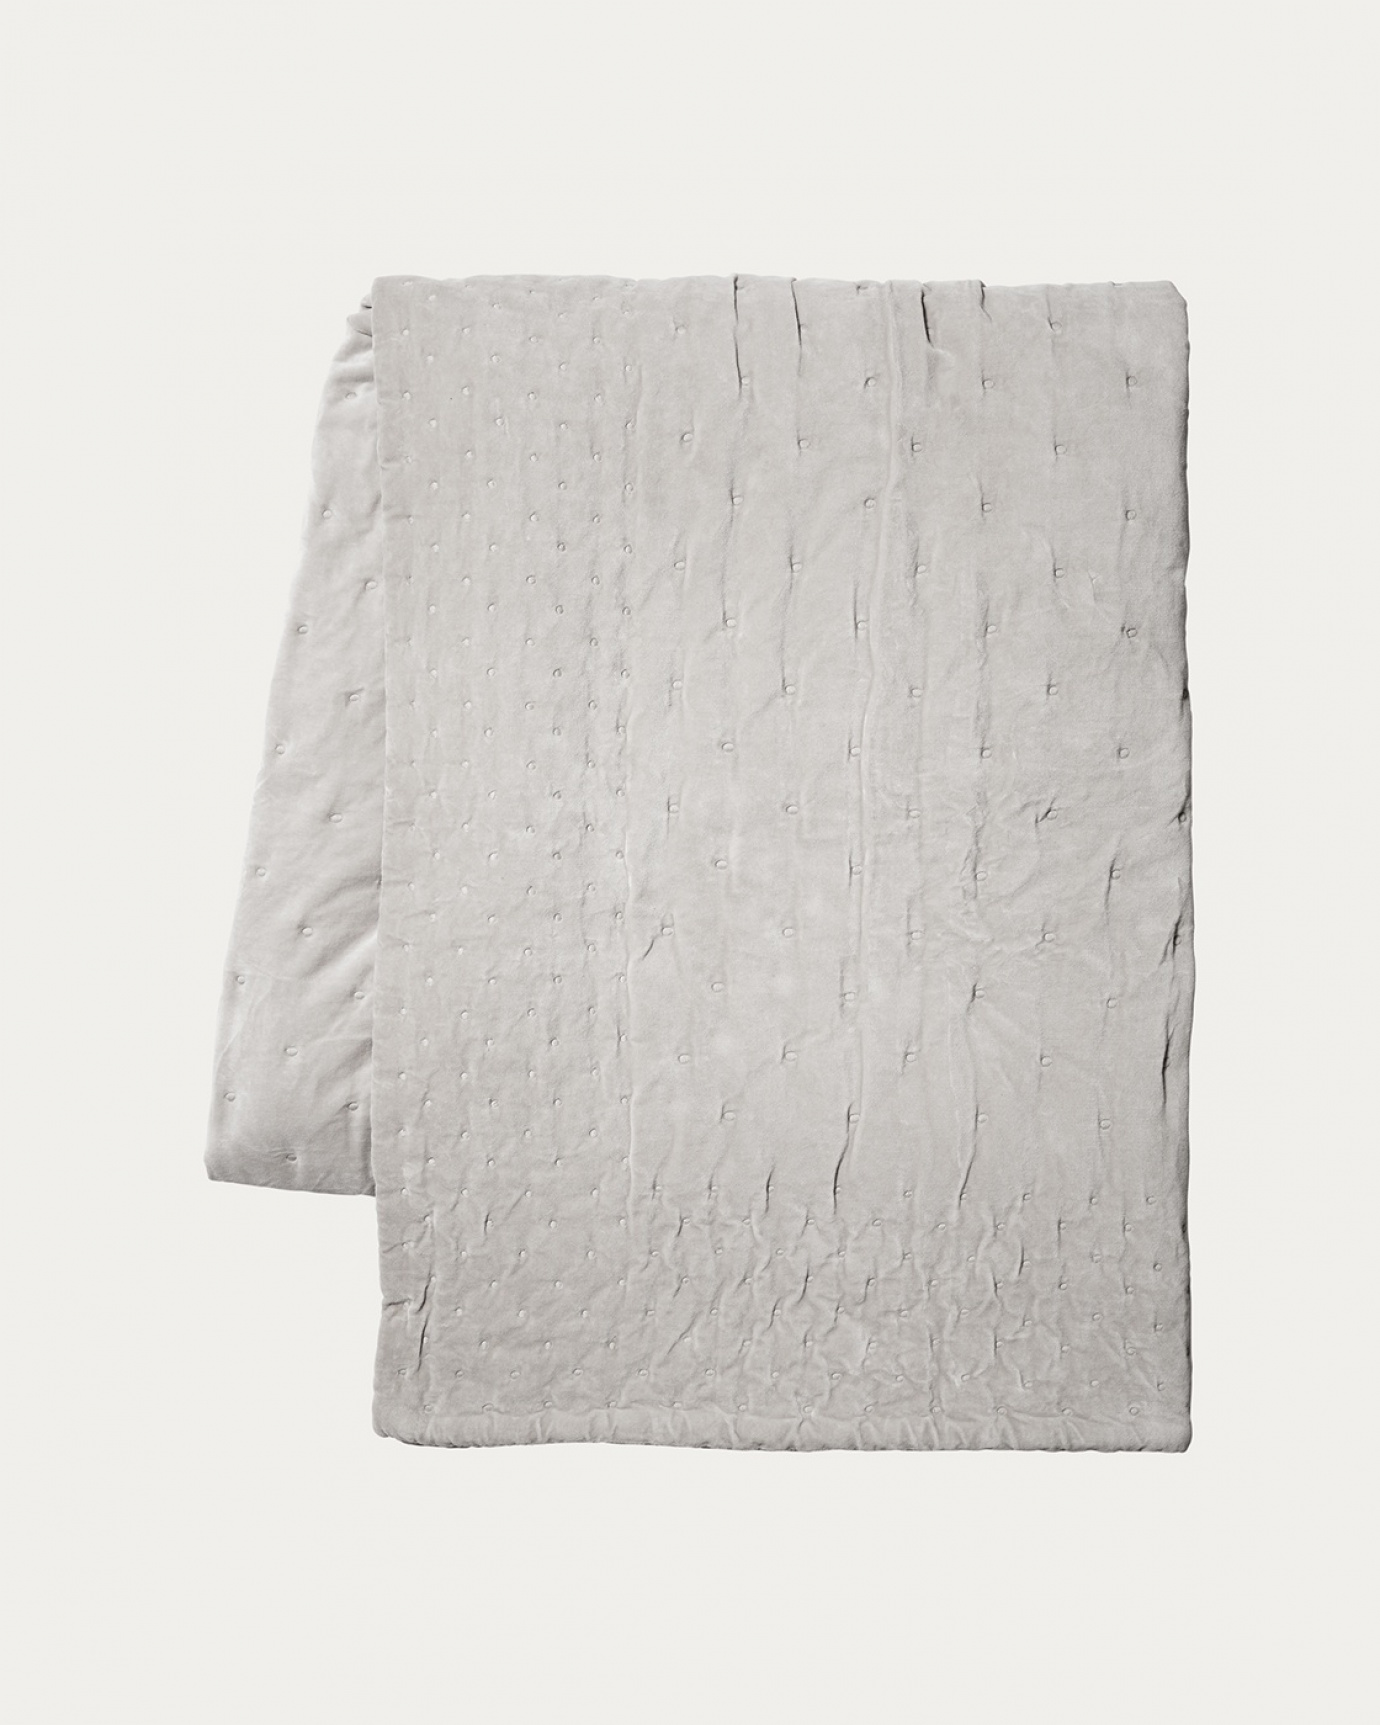 Produktbild silber-grau Tagesdecke PAOLO aus weichem Samt aus bio-baumwolle für Doppelbett von LINUM DESIGN. Größe 270x260 cm.